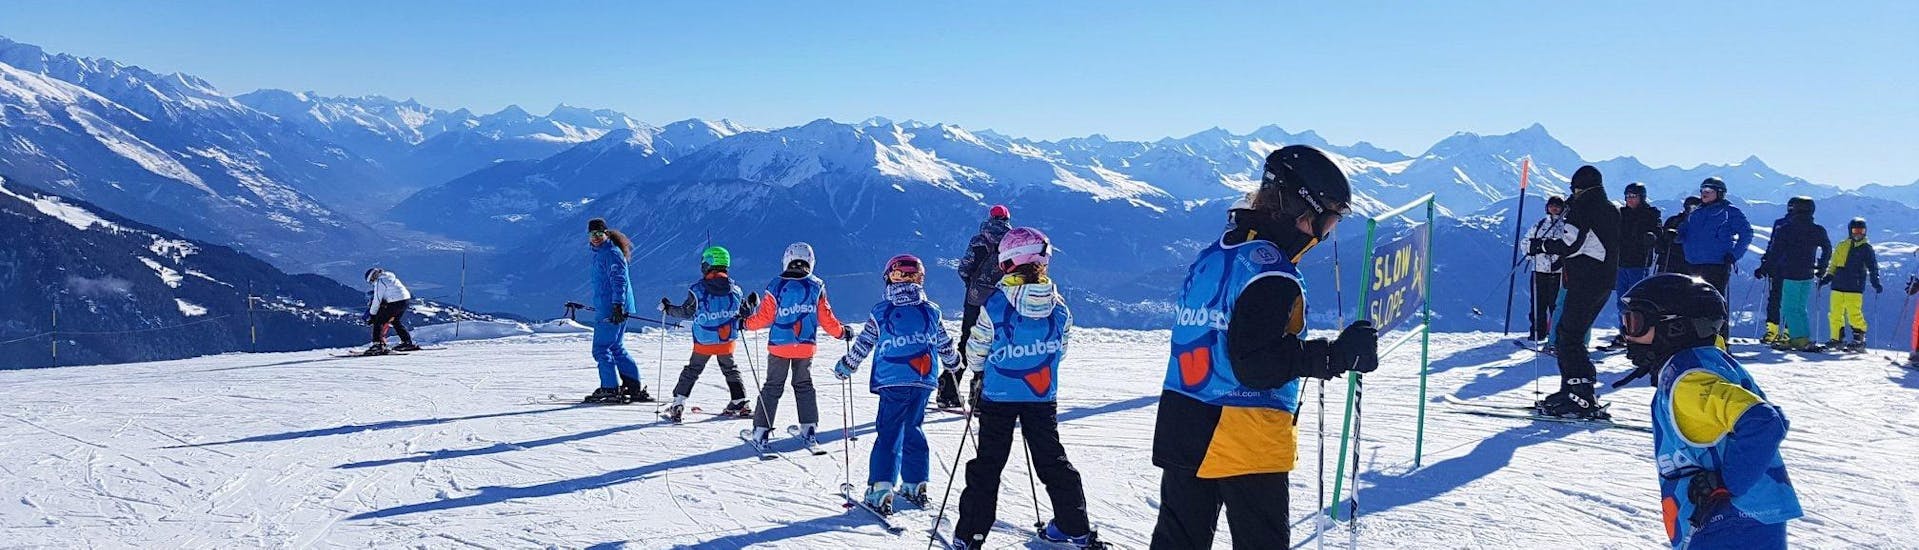 Clases de esquí para niños a partir de 6 años para todos los niveles.